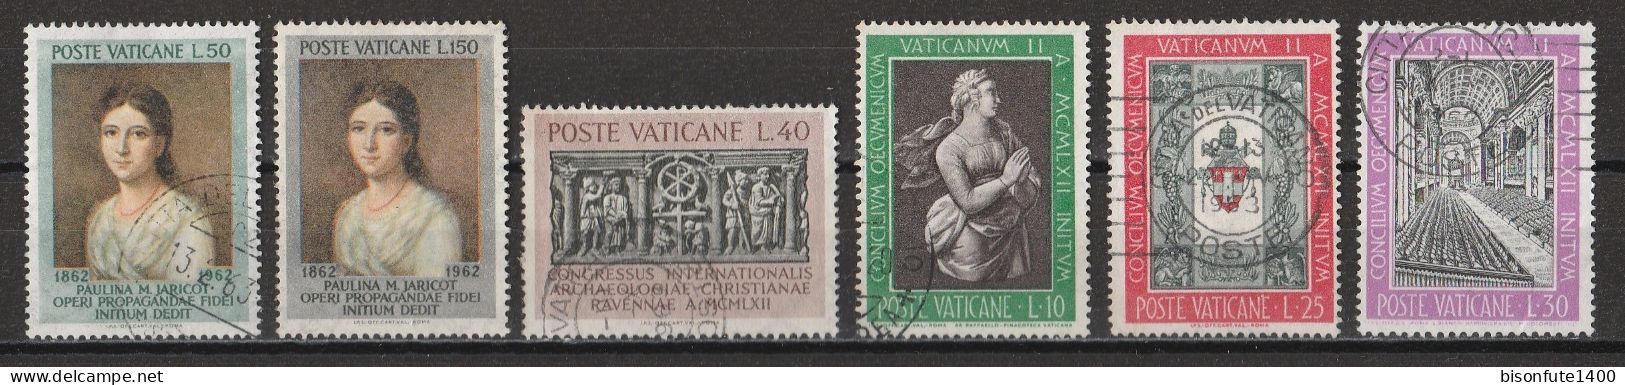 Vatican 1962 : Timbres Yvert & Tellier N° 357 - 358 - 360 - 364 - 366 - 367 - 368 - 369 - 370 - 371 Et 372 Oblitérés. - Oblitérés